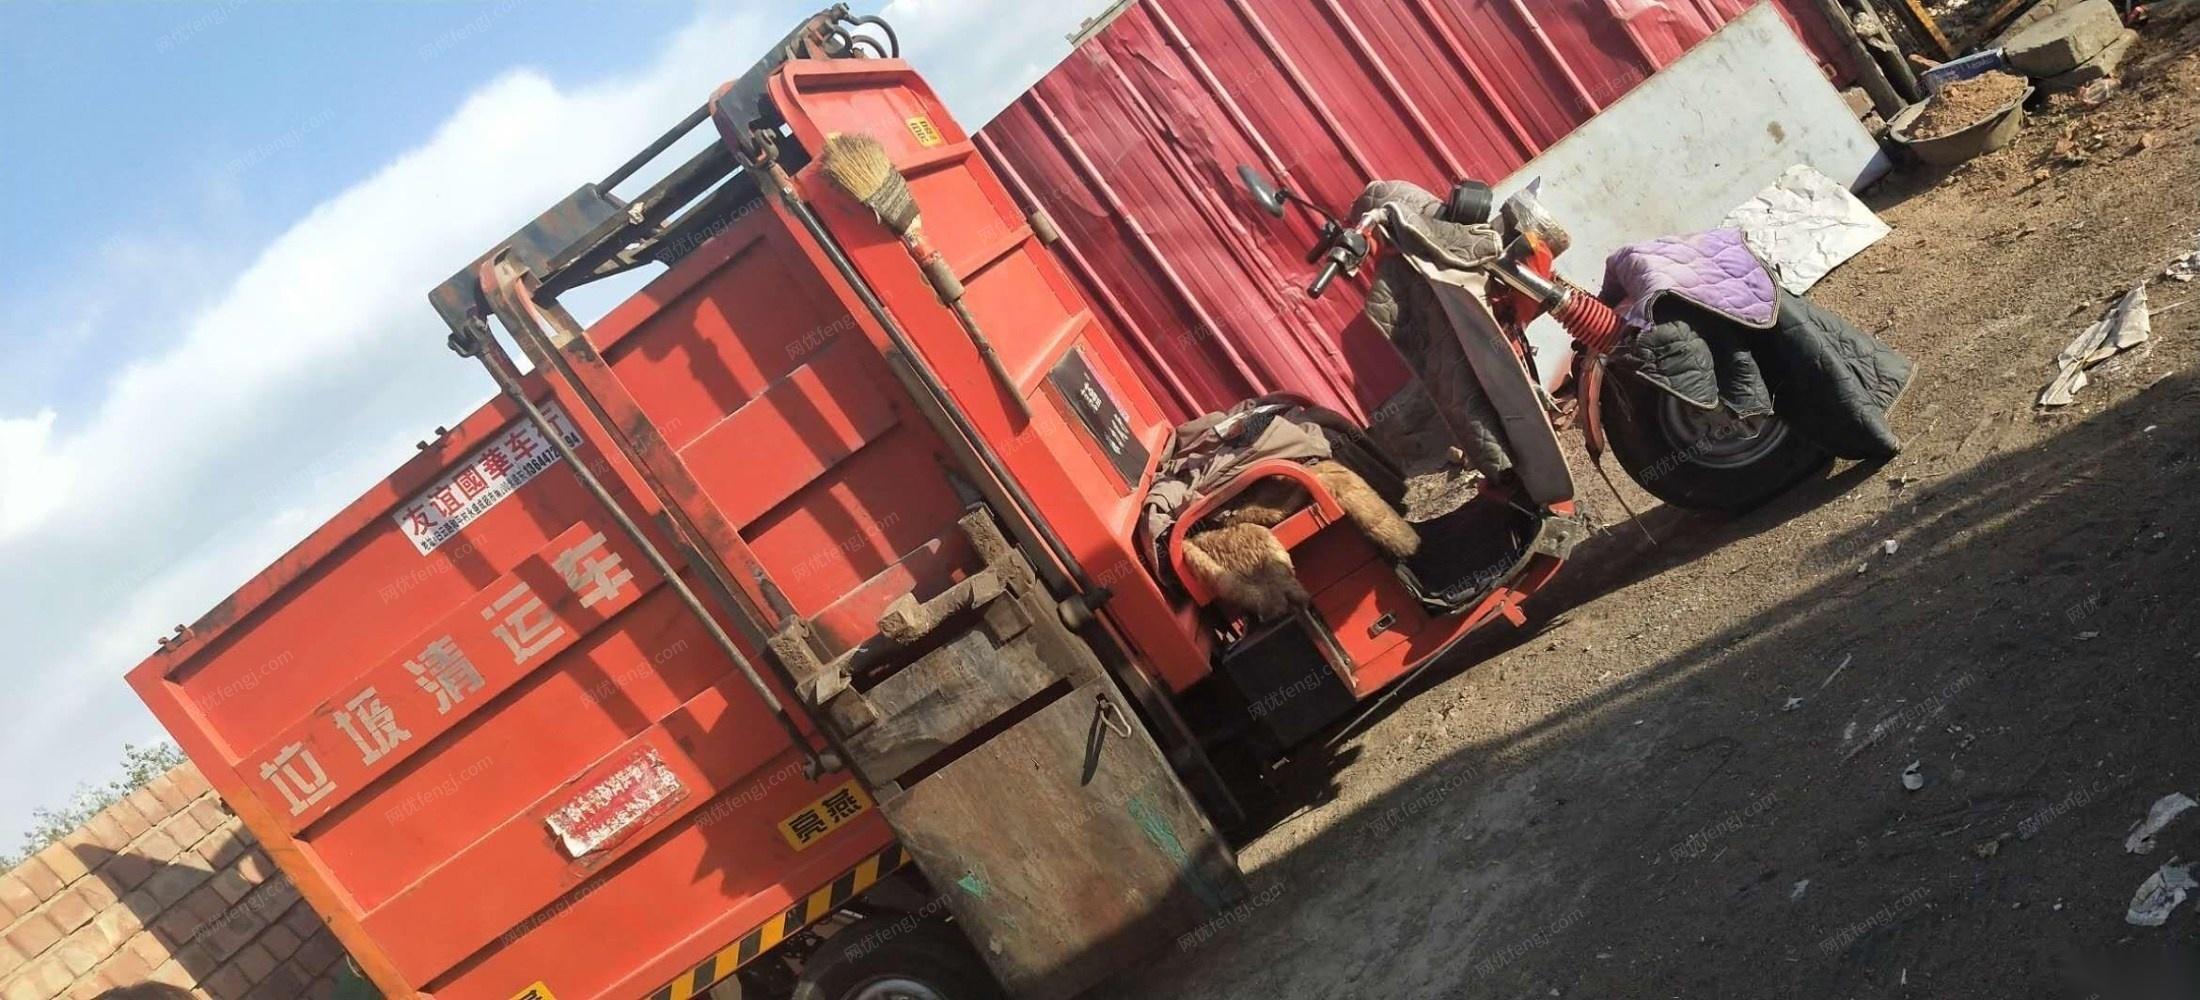 内蒙古包头出售闲置2018年11月自动垃圾清洁车一台 15000元